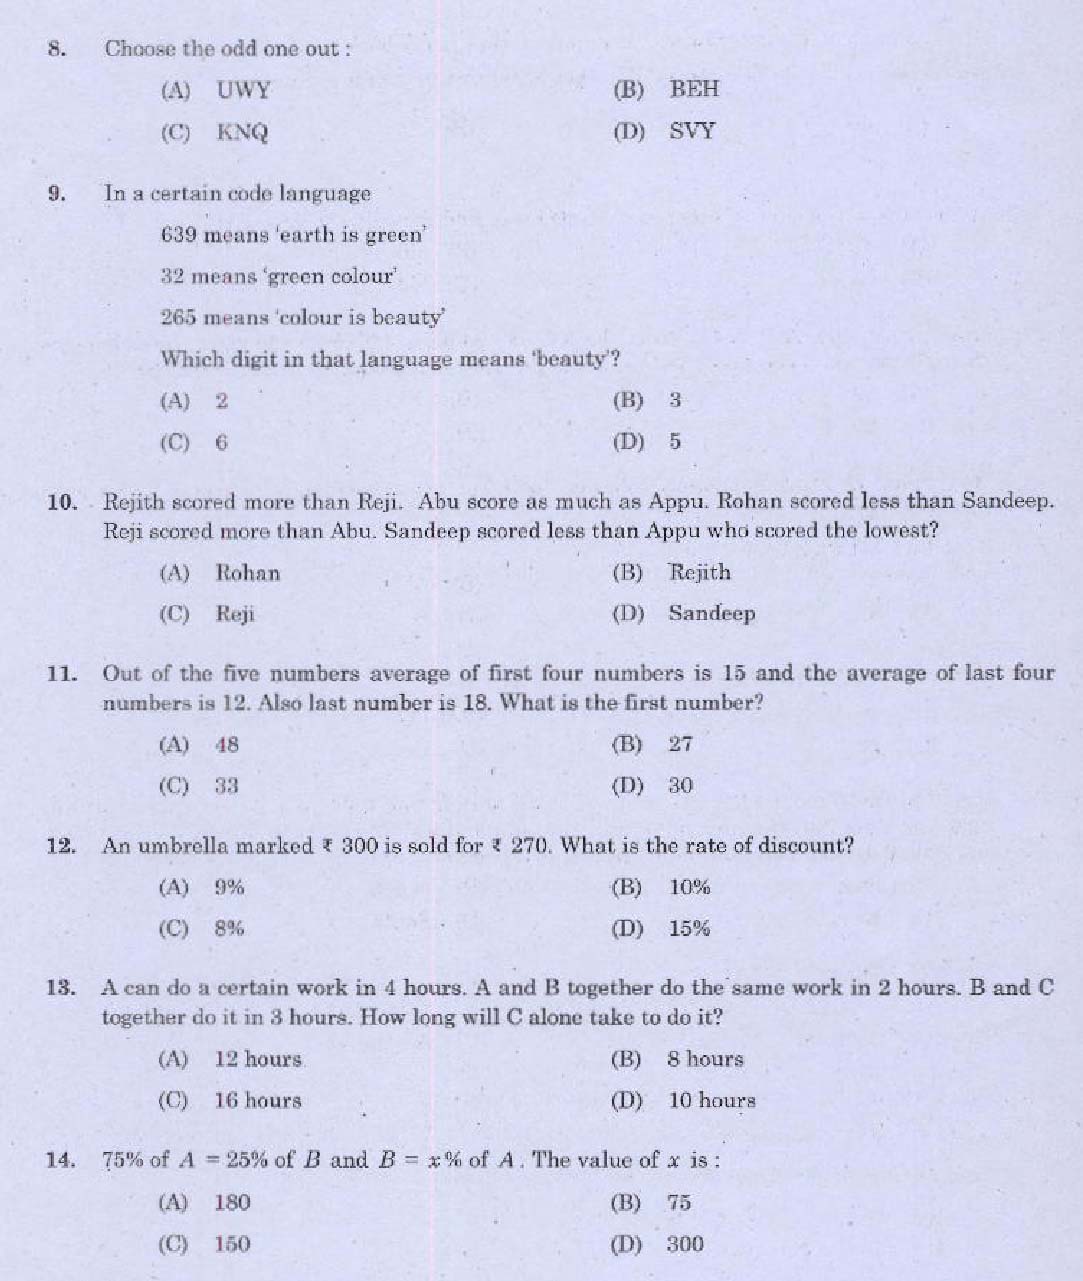 Kerala PSC Administrative Assistant Exam Question 0232016 2